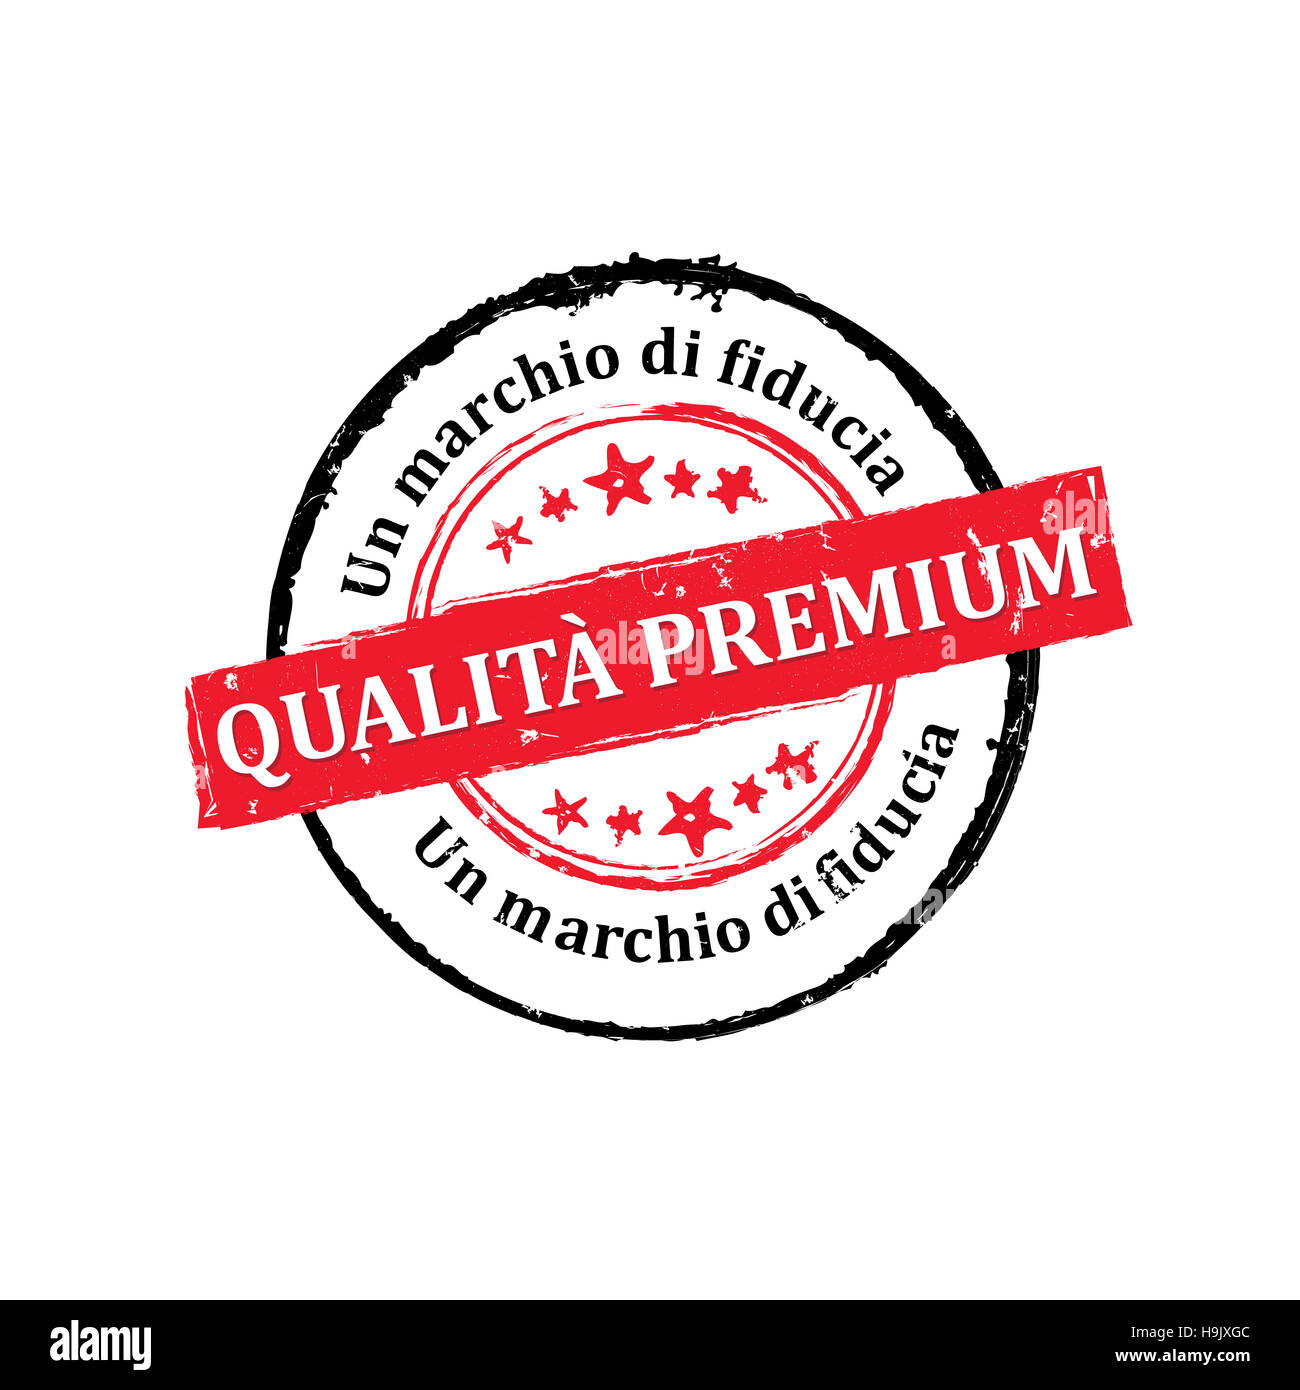 Qualità Premium, Un marchio di fiducia etichetta / Medaglia Stock Photo